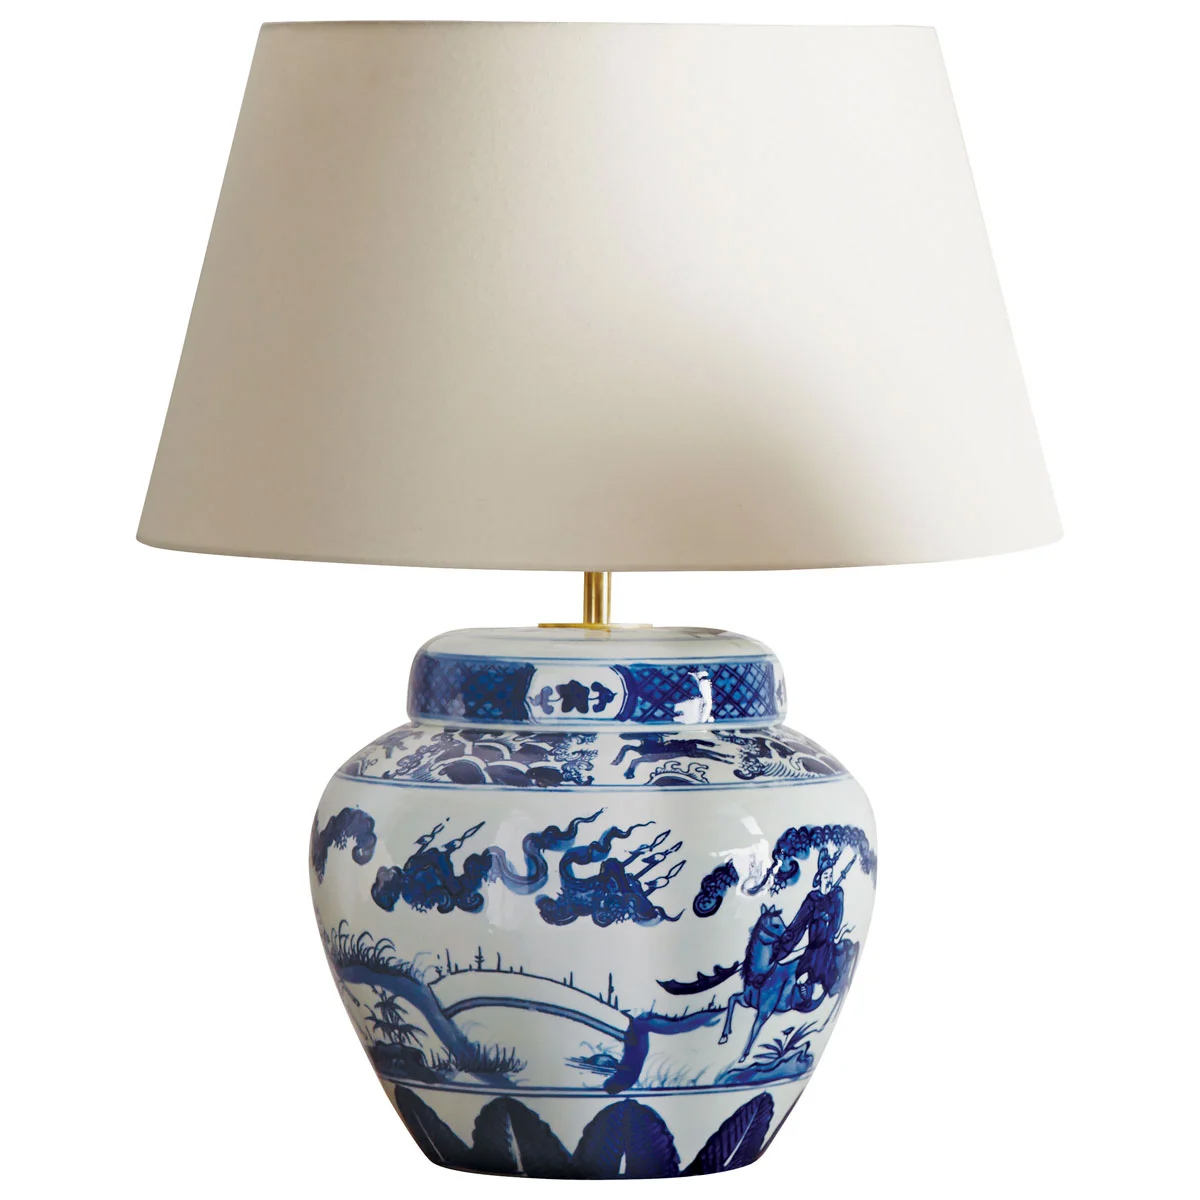 OKA UK - Kraakware Ceramic Chinese Table Lamp